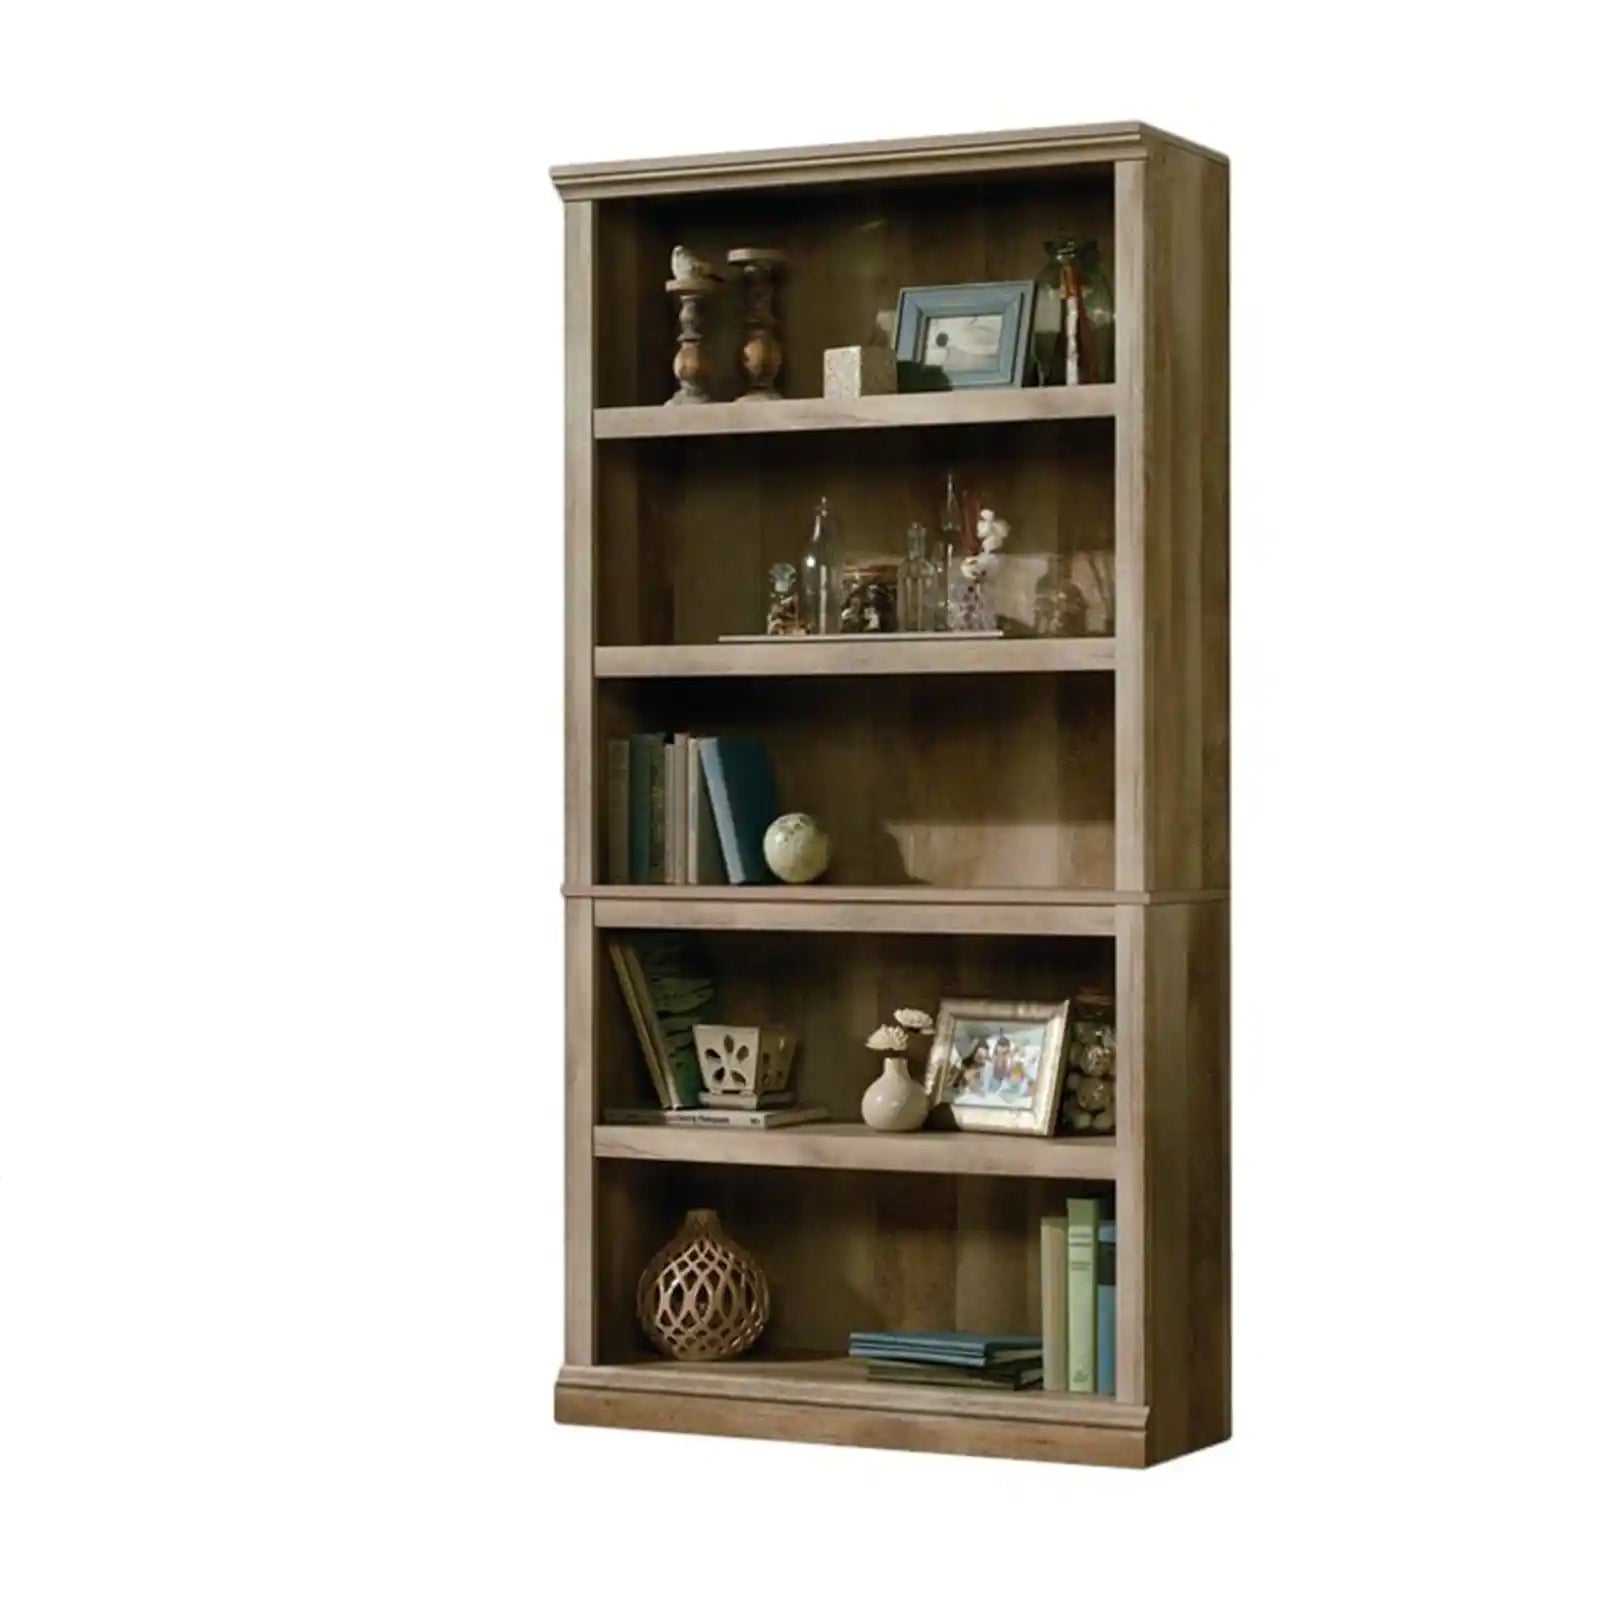 Mid century 5 Shelf Wood Bookcase